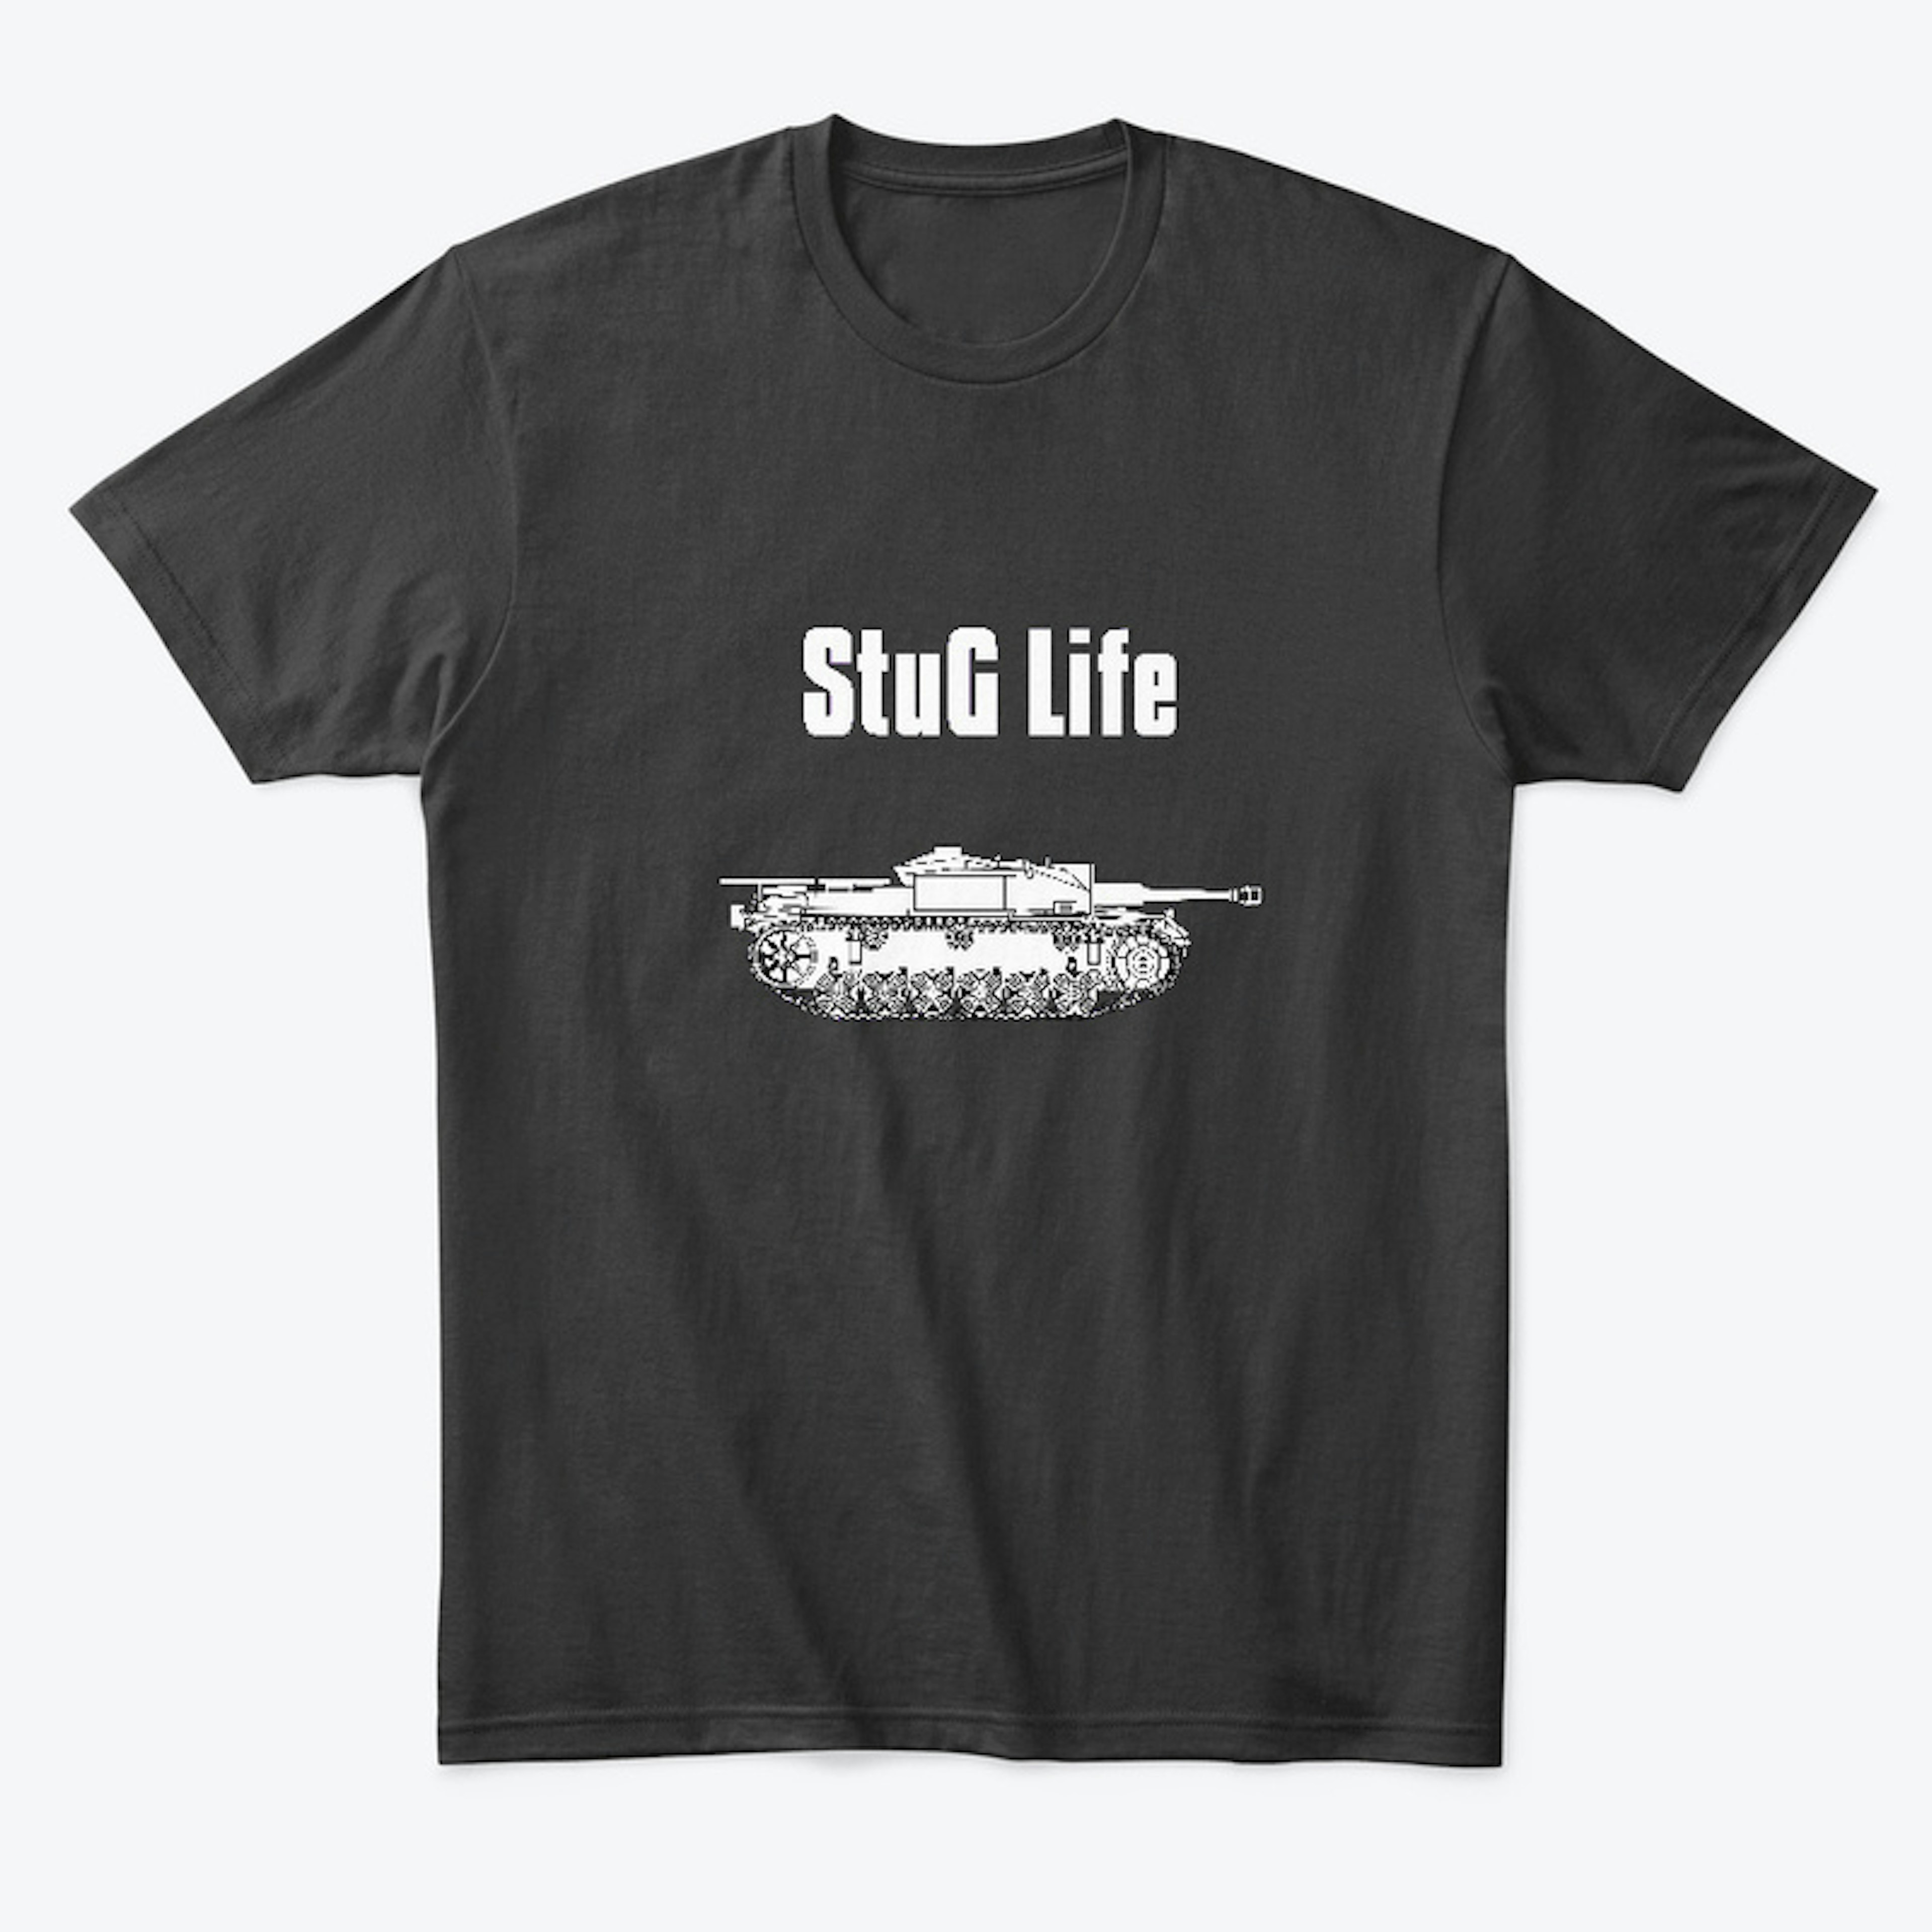 StuG Life - Military History Visualized